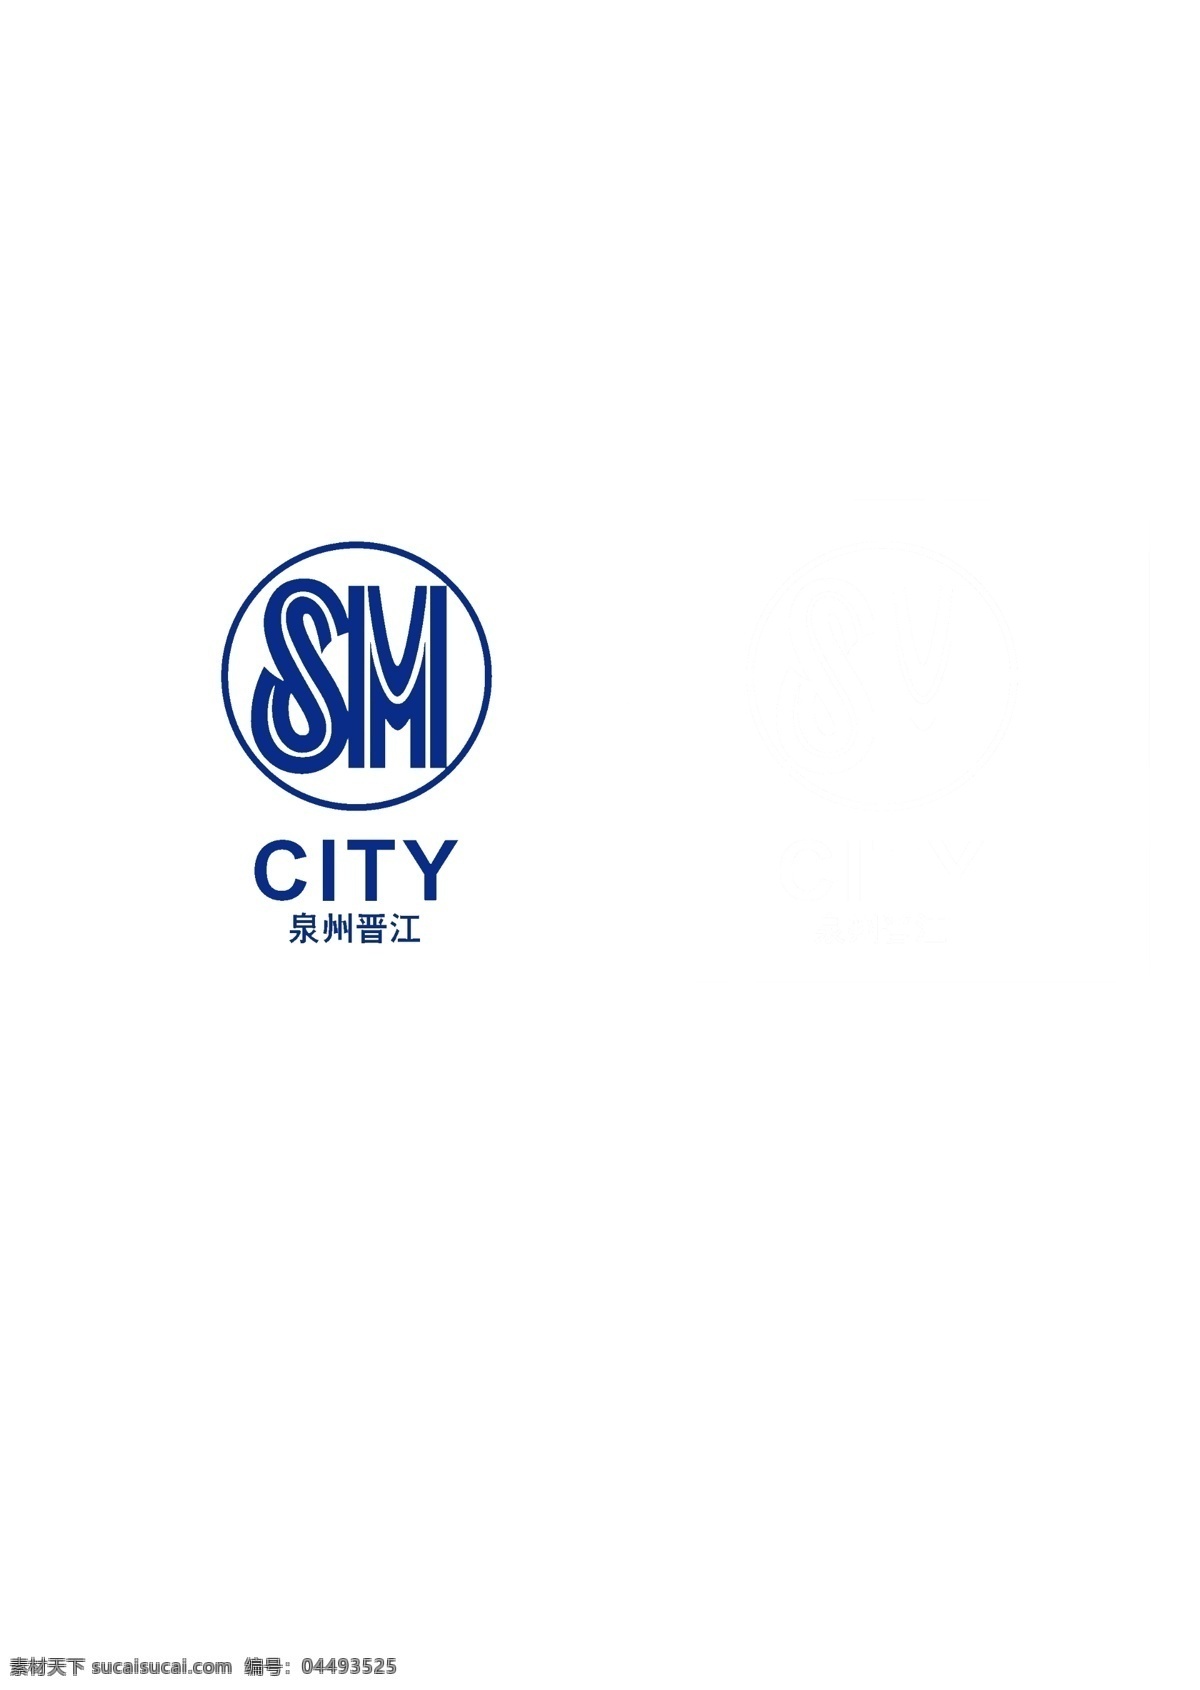 泉州晋江sm 泉州 晋江 sm city logo 蓝体字 白体字 绿色